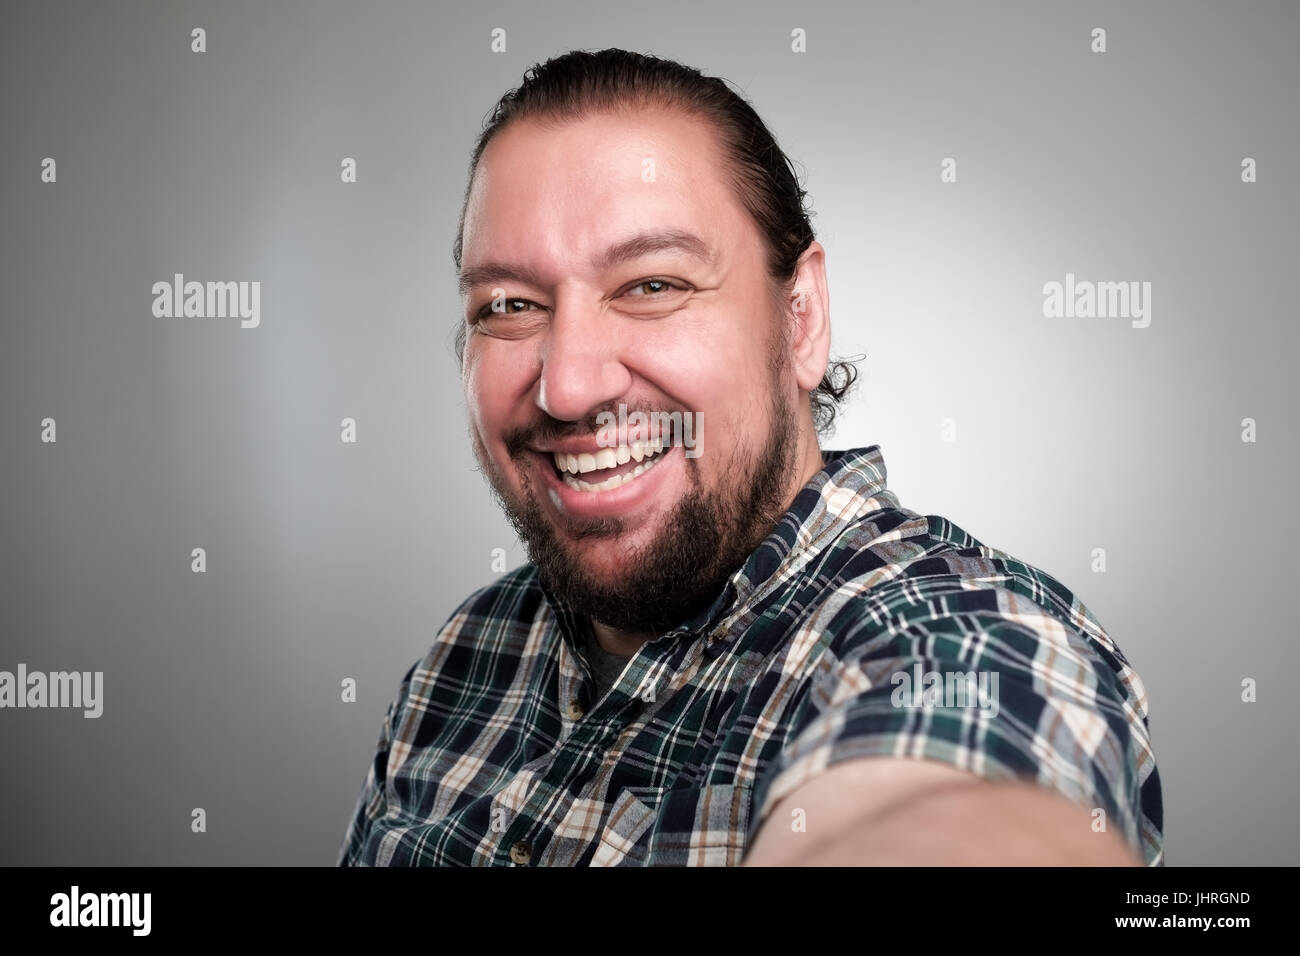 Schöner junger Mann in Freizeitkleidung machen Selfie auf grauem Hintergrund. Er hat ein glückliches Gesicht lächelnd mit Zähnen. Stockfoto